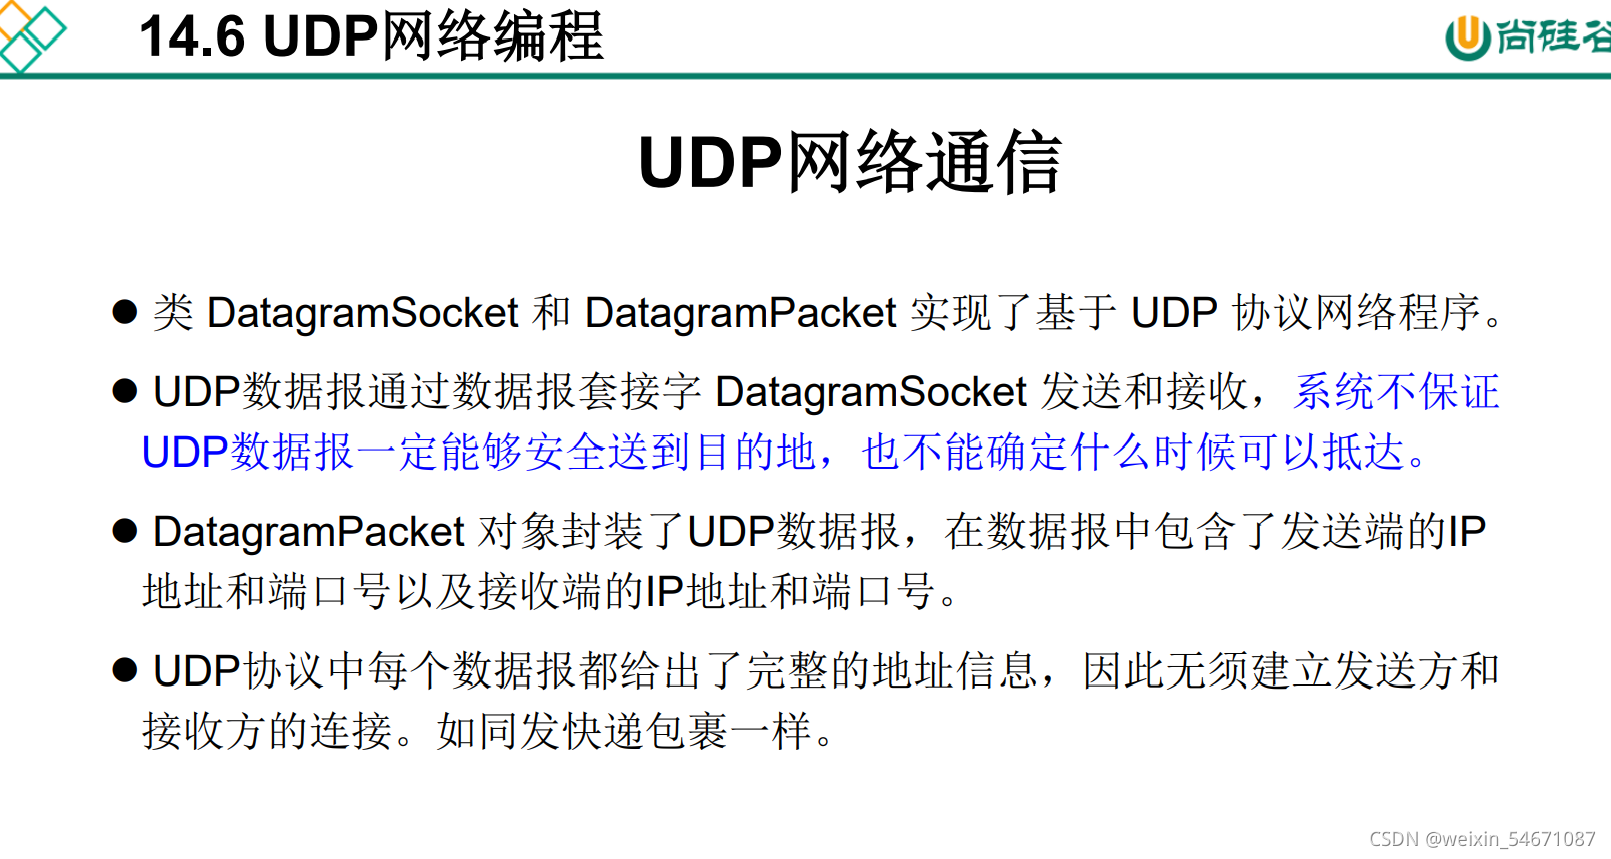 udp协议客户端udp客户端是什么意思